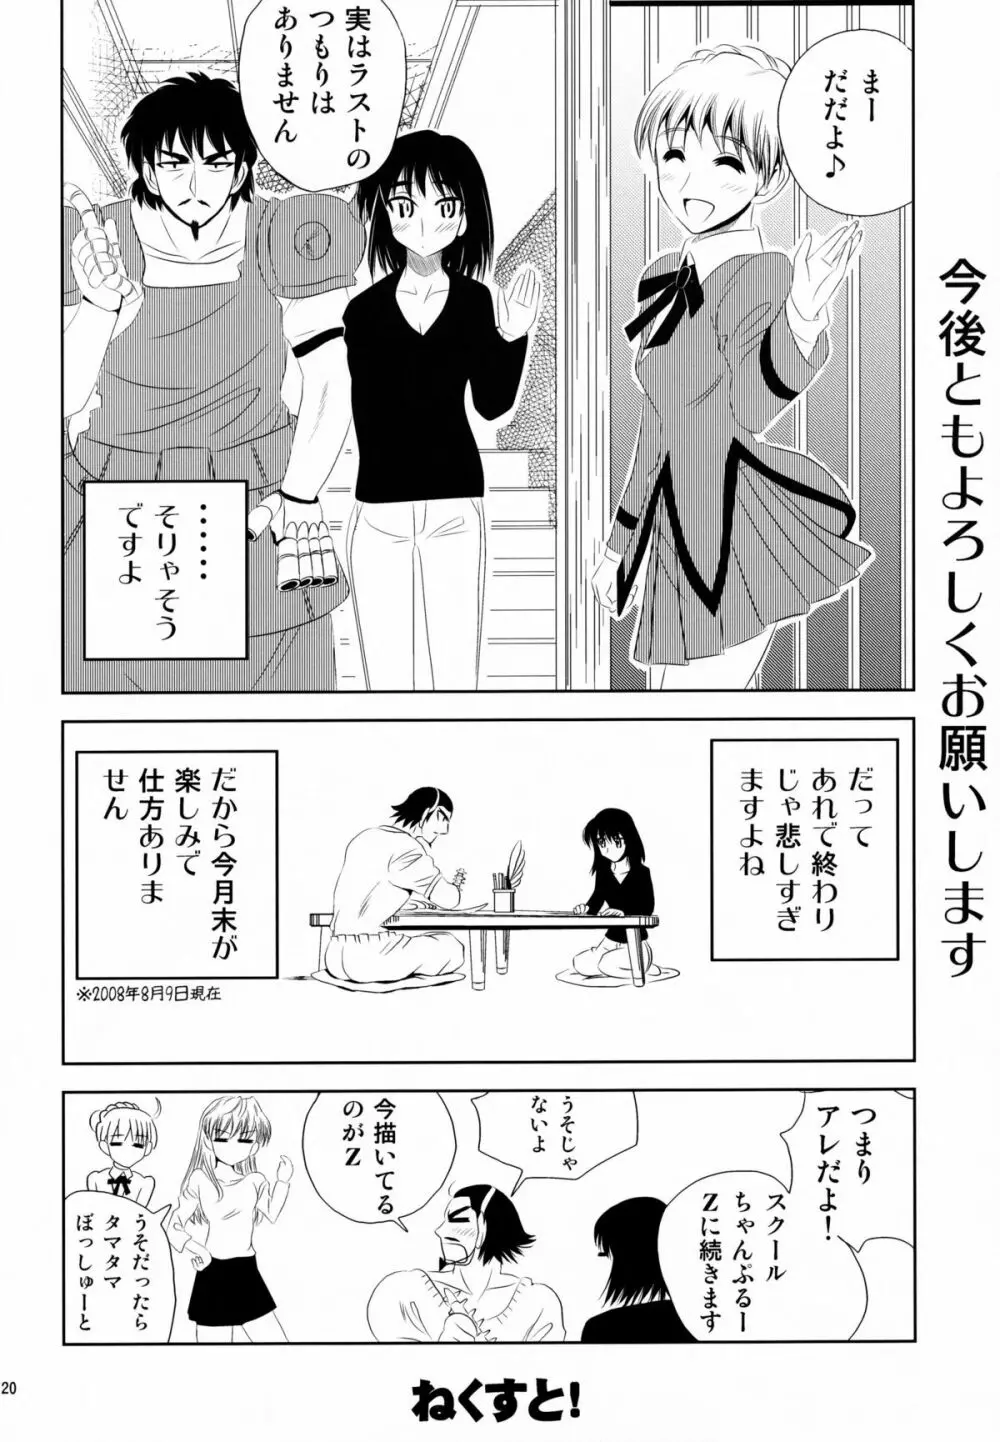 school ちゃんぷるー 13 20ページ